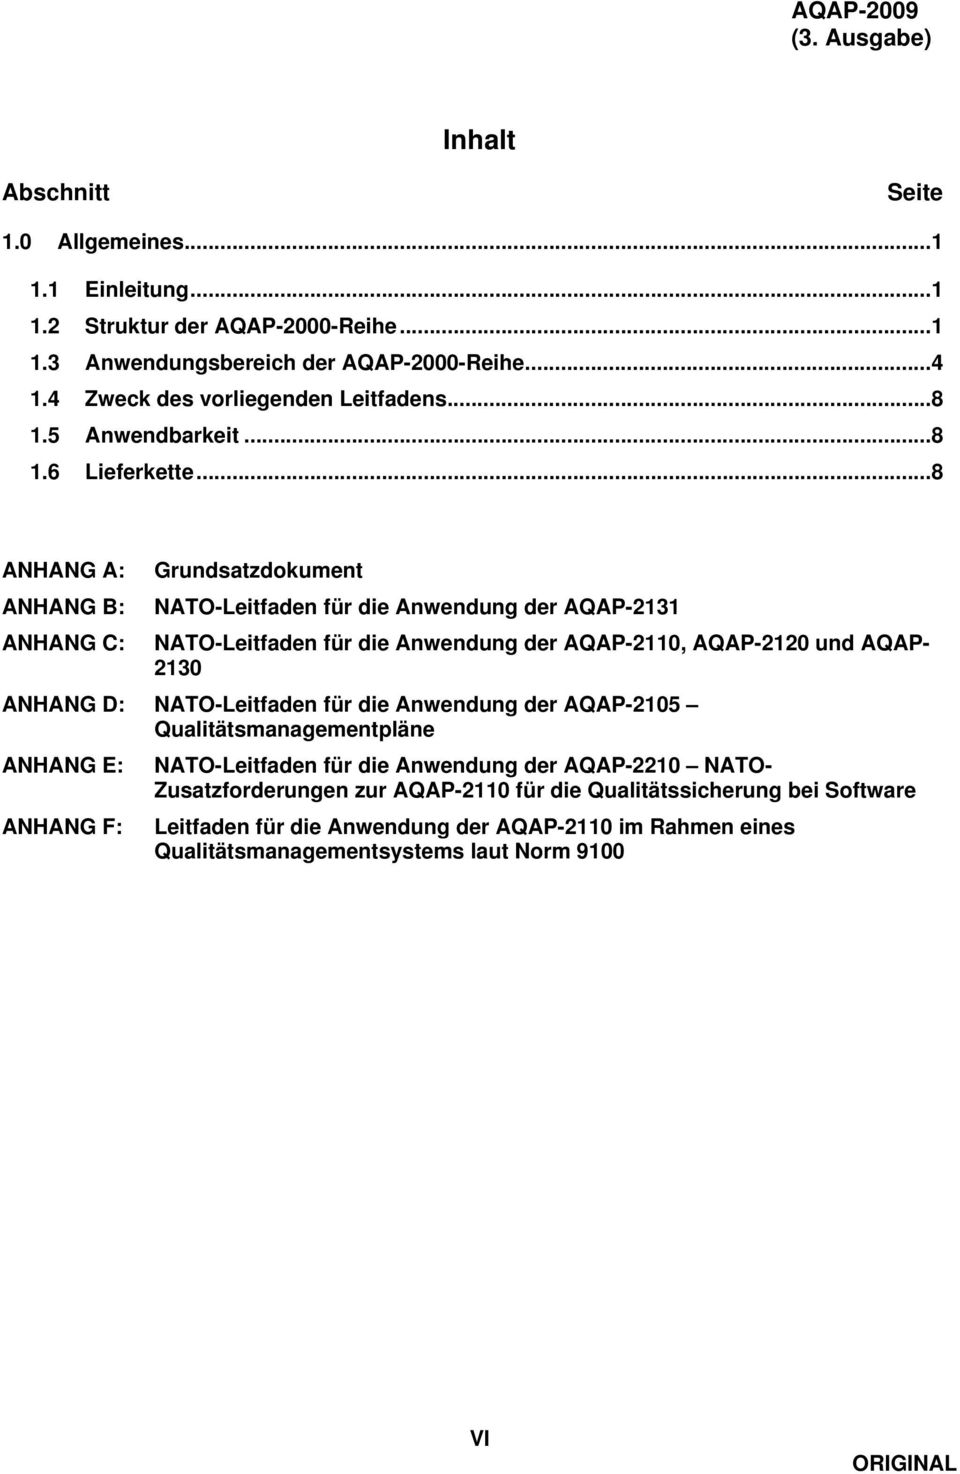 ..8 ANHANG A: ANHANG B: ANHANG C: Grundsatzdokument NATO-Leitfaden für die Anwendung der AQAP-2131 NATO-Leitfaden für die Anwendung der AQAP-2110, AQAP-2120 und AQAP- 2130 ANHANG D: